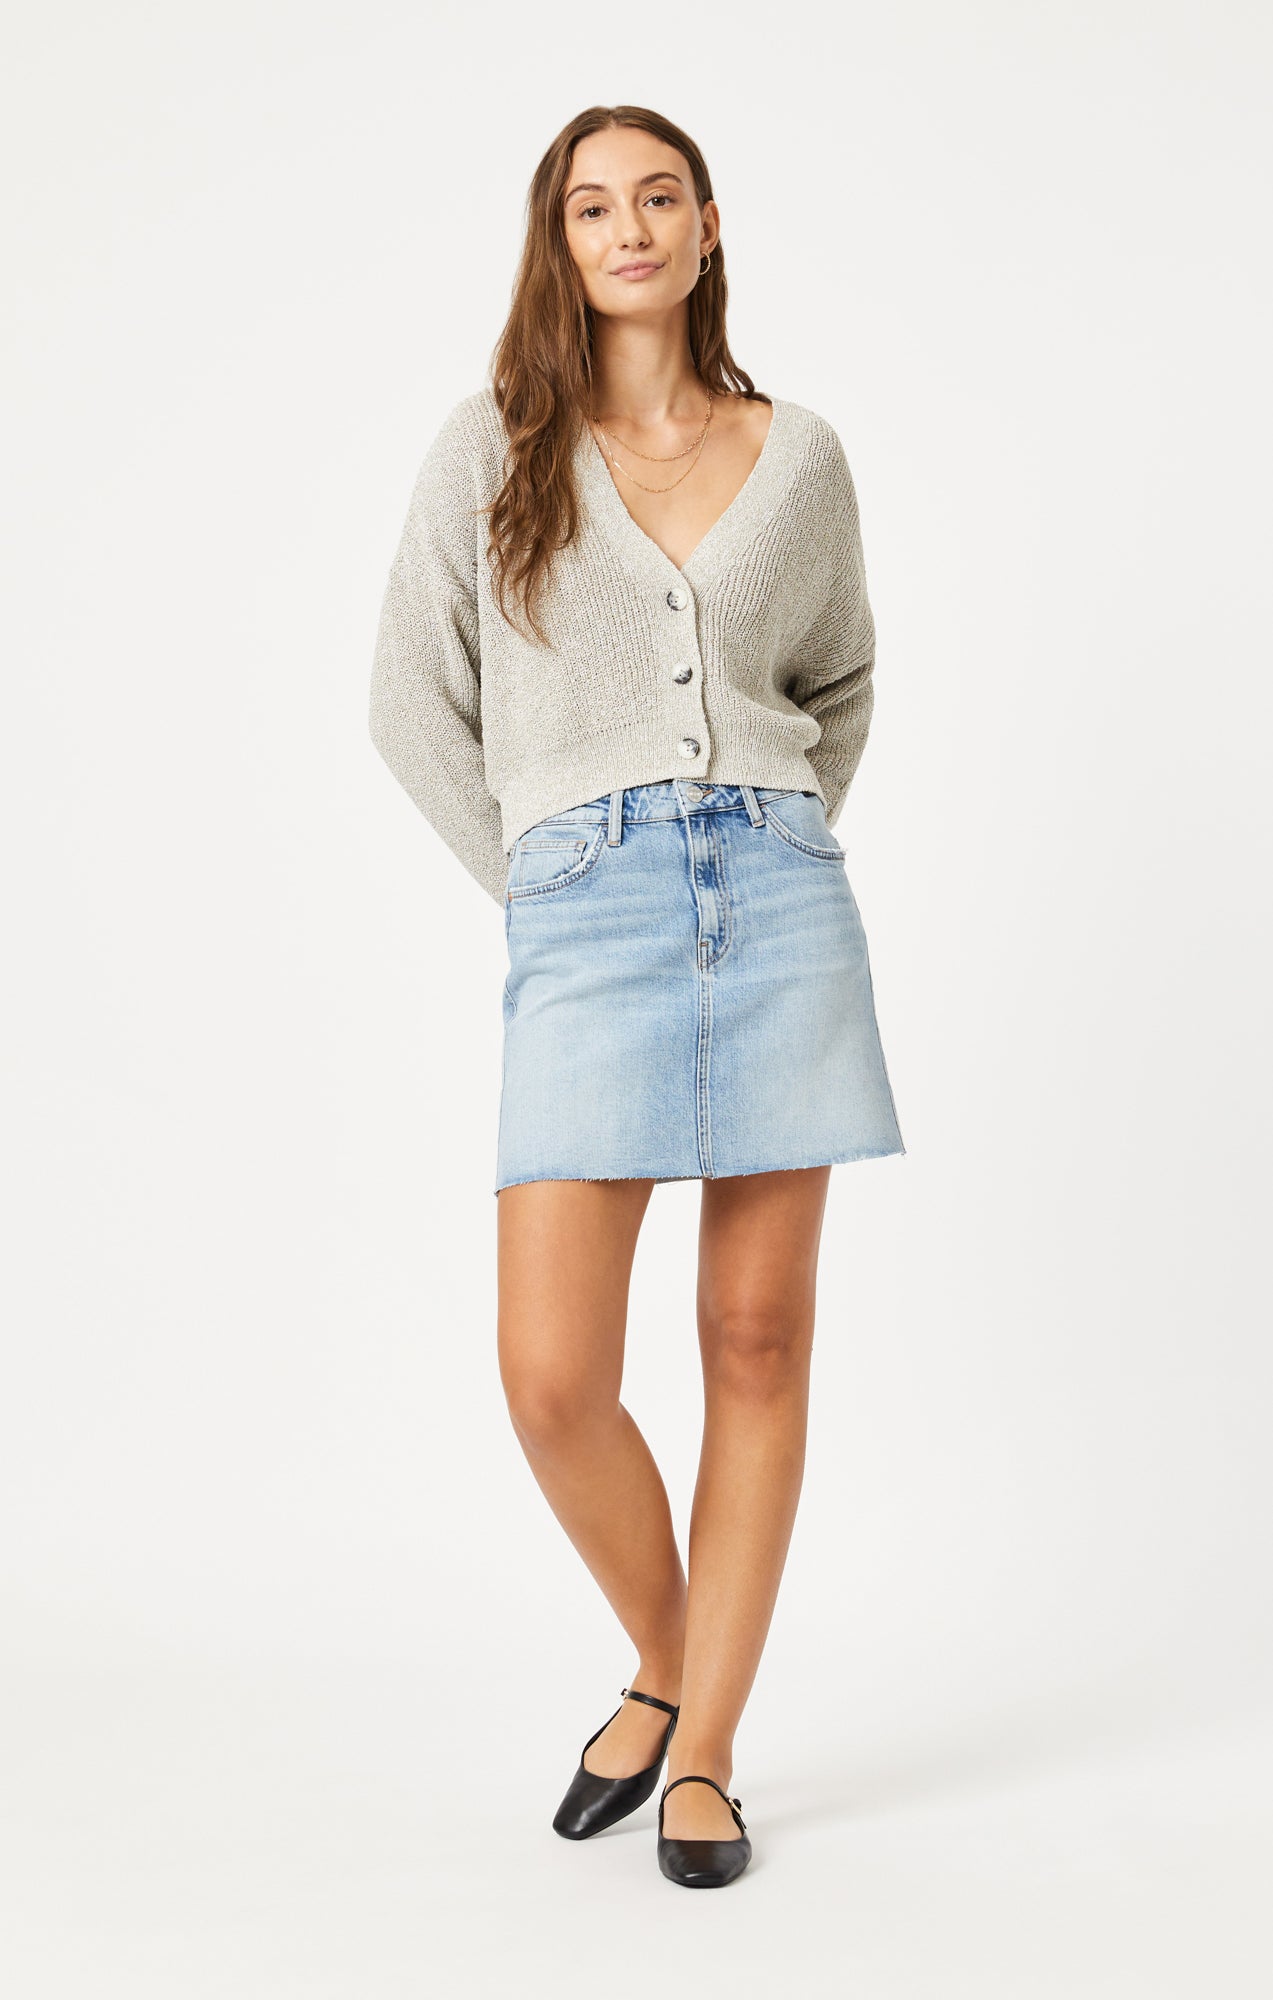 Women's Skirts - Blue Jean, White Denim & More